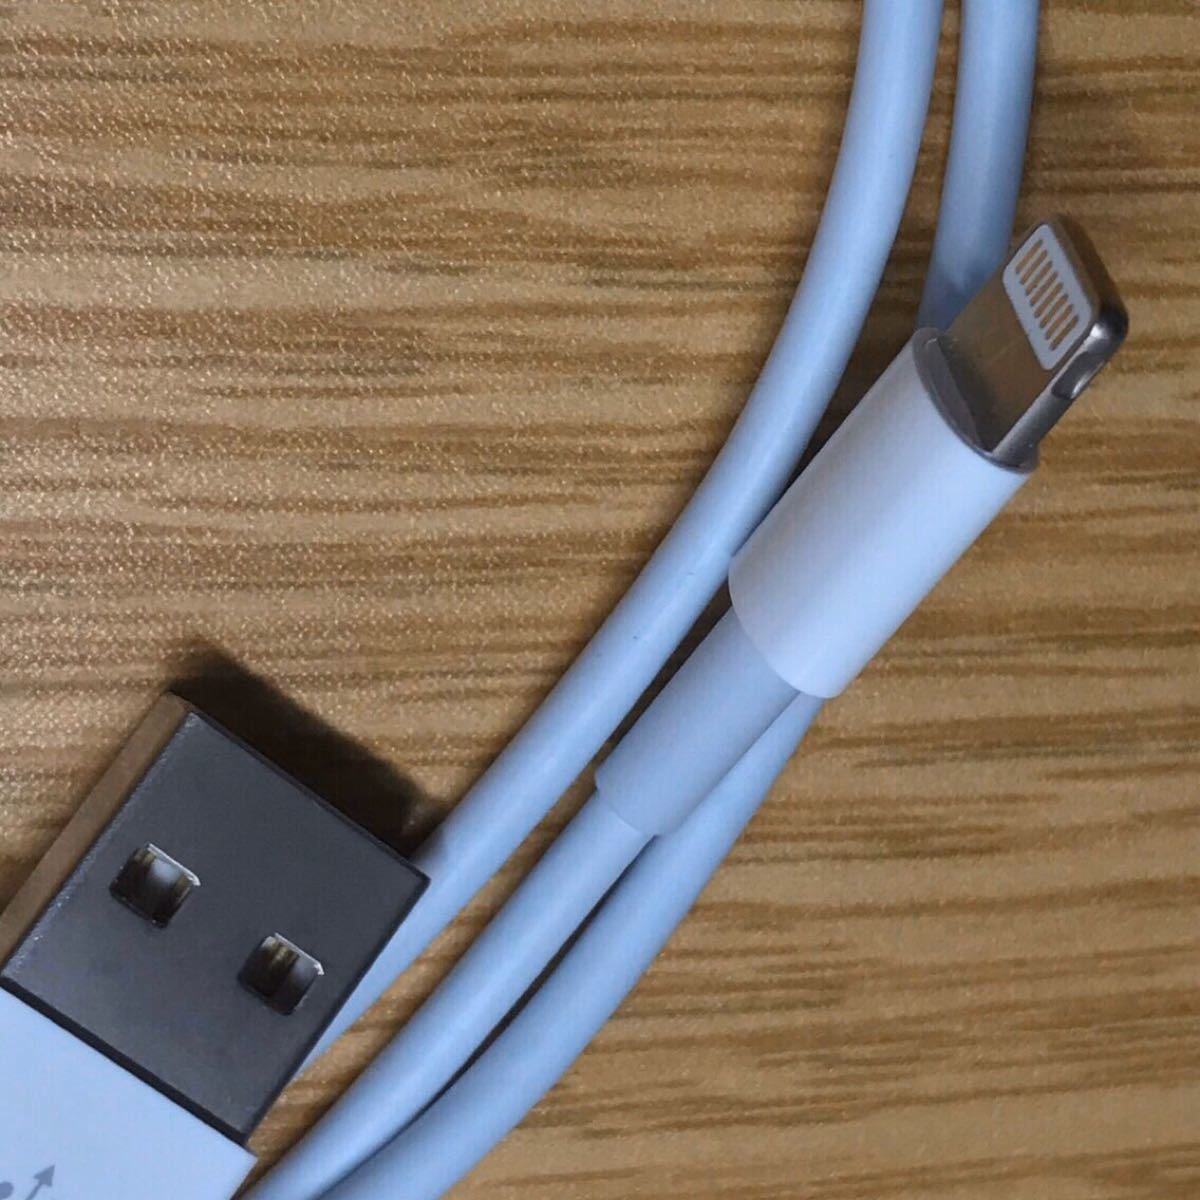 iPhone 充電器 ケーブル lightning cable  ライトニングケーブル USB スマホ 電源 コード  4点